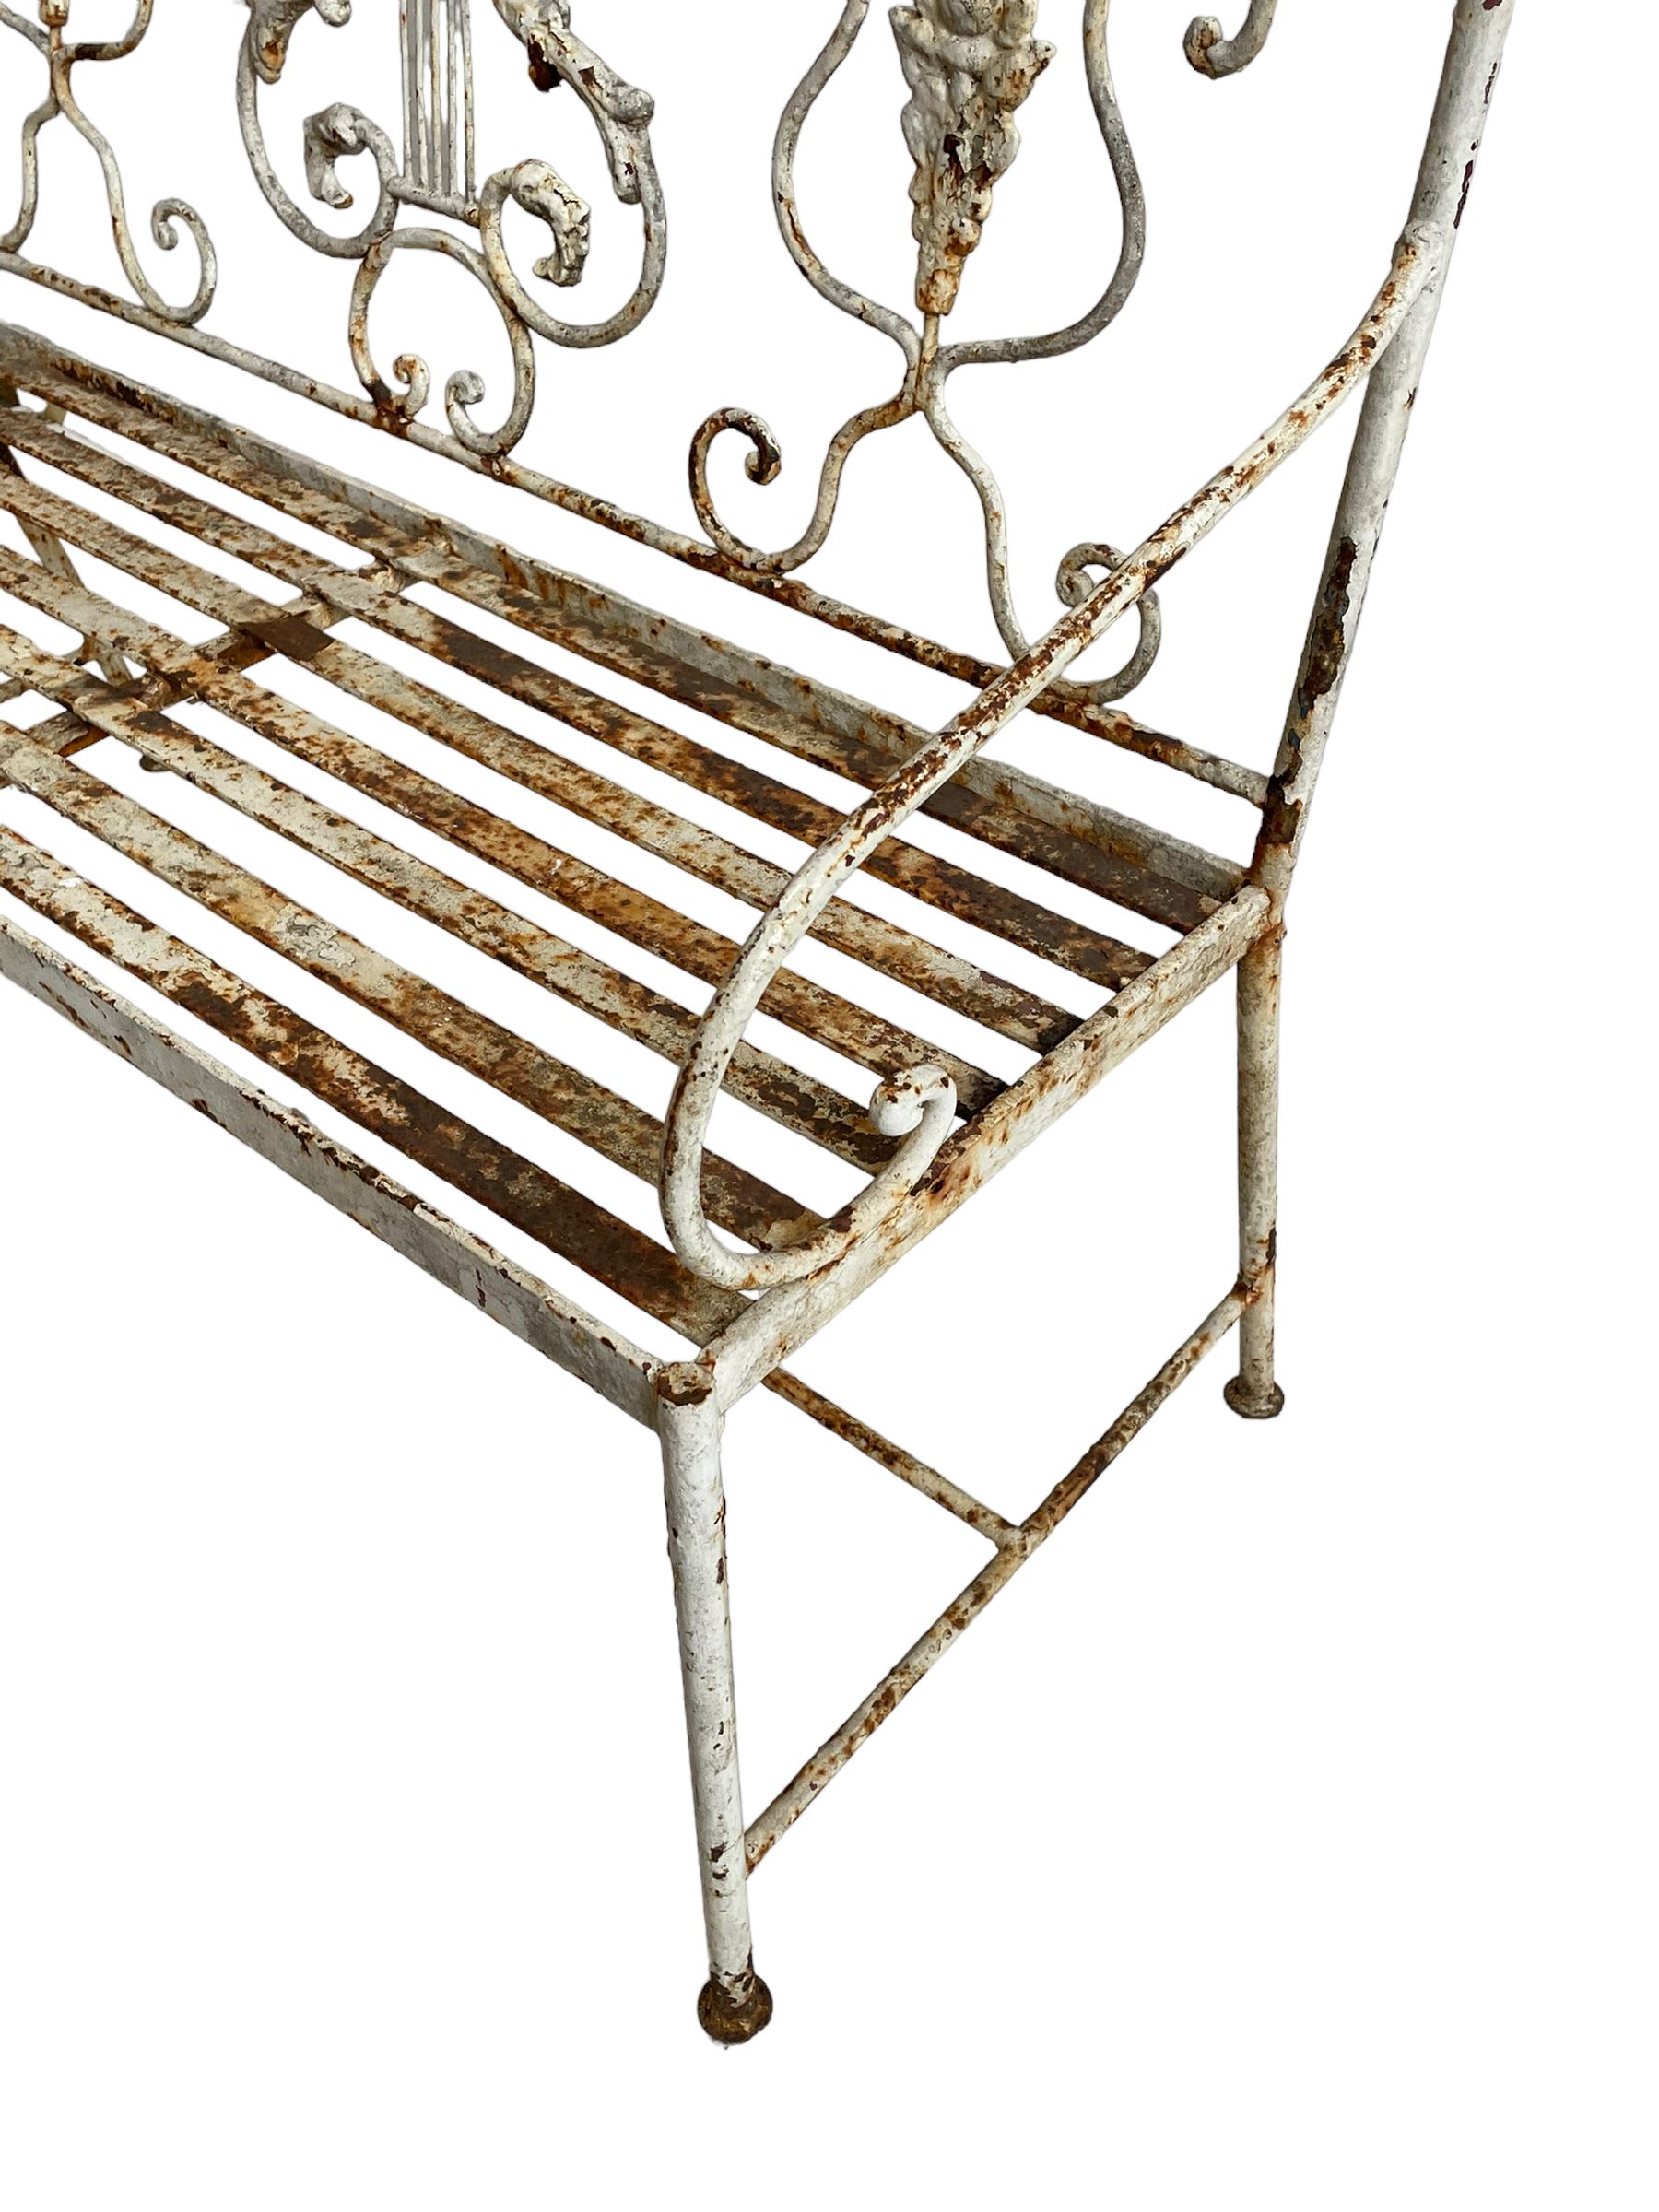 Regency design wrought metal garden bench - Image 3 of 7